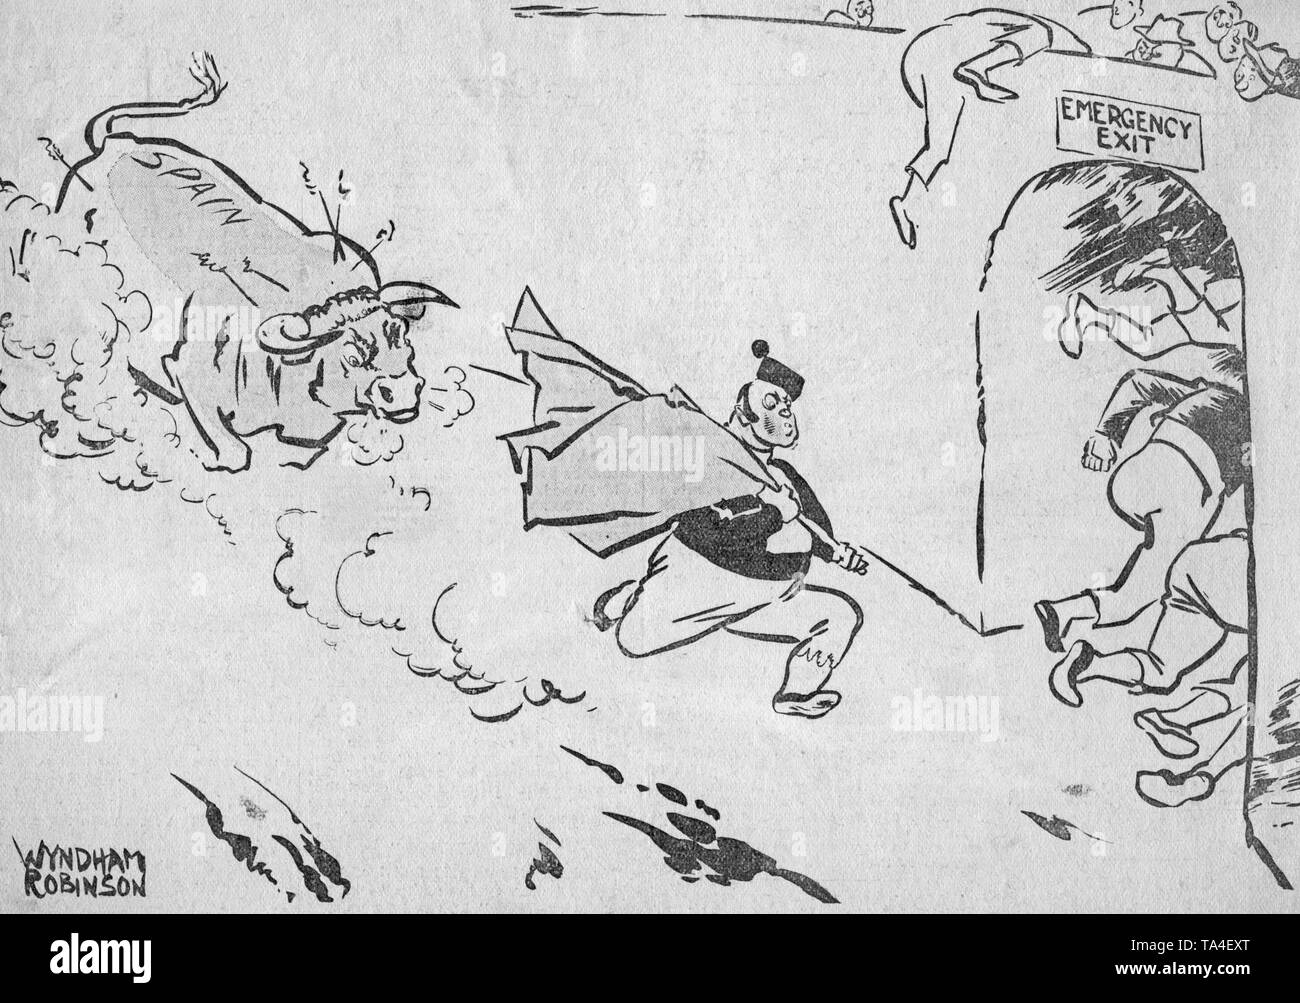 Sans date d'impression d'une caricature de la guerre civile espagnole et les offensives des troupes nationales espagnoles par le caricaturiste britannique Wyndham Robinson (né en 1883) sous le titre "Le drapeau rouge et le Bull', 1936. La caricature représente un taureau espagnol sauvages que chasser est un torero avec un tissu rouge (République, communistes) de l'arène par une sortie de secours. Robinson a travaillé pour la 'Morning Post' à Londres, et était connu pour ses dessins anticommuniste dans les années 1930. Banque D'Images